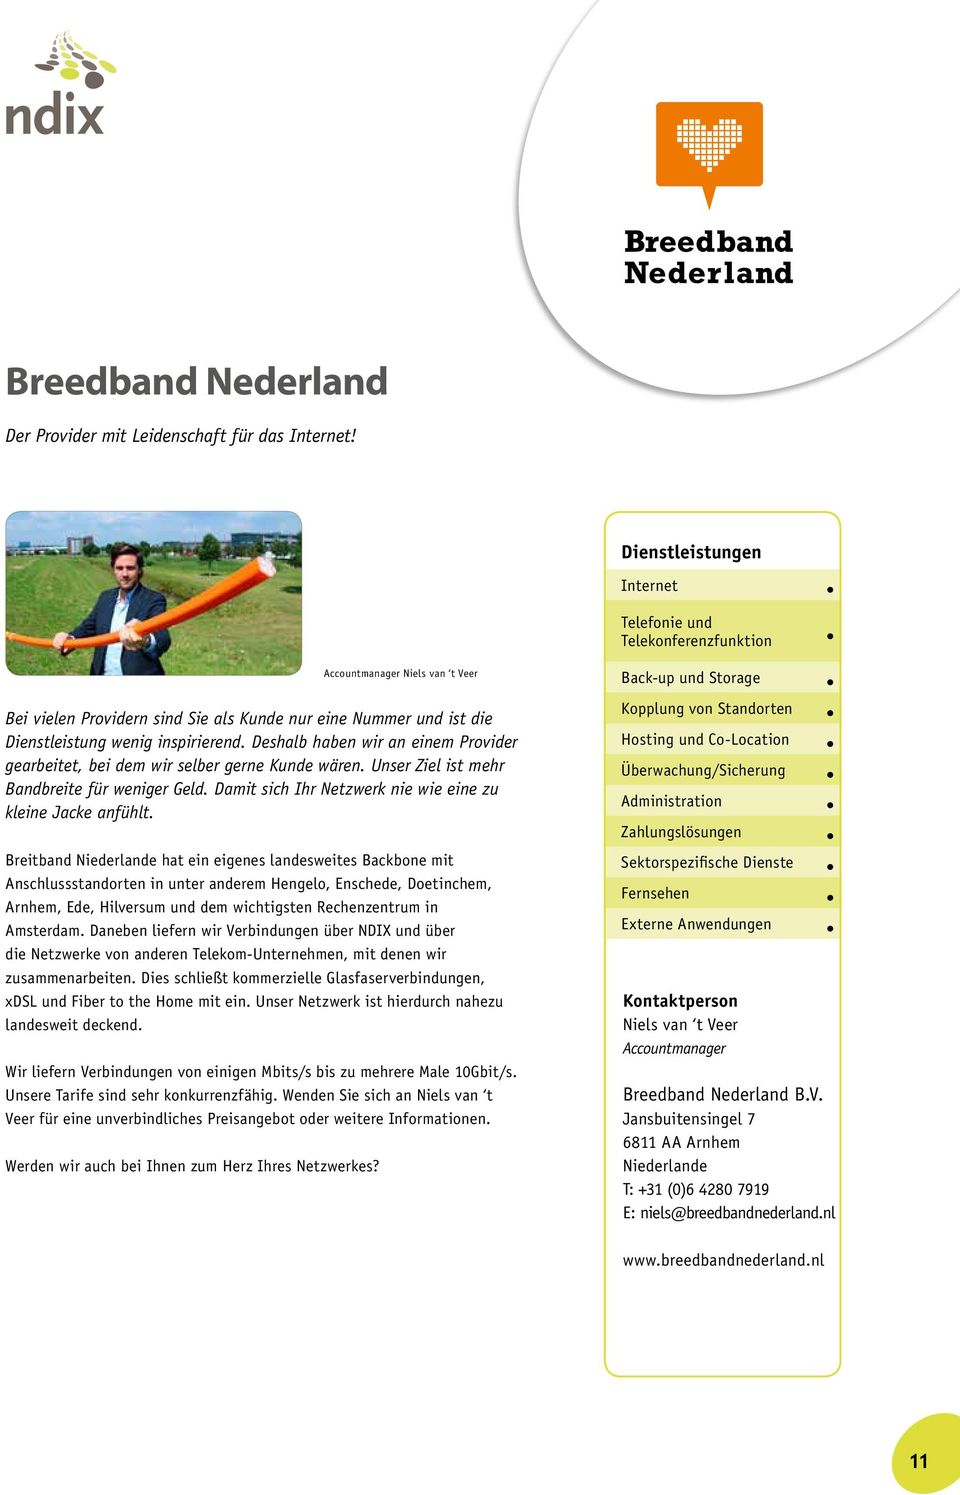 Breitband hat ein eigenes landesweites Backbone mit Anschlussstandorten in unter anderem Hengelo, Enschede, Doetinchem, Arnhem, Ede, Hilversum und dem wichtigsten Rechenzentrum in Amsterdam.